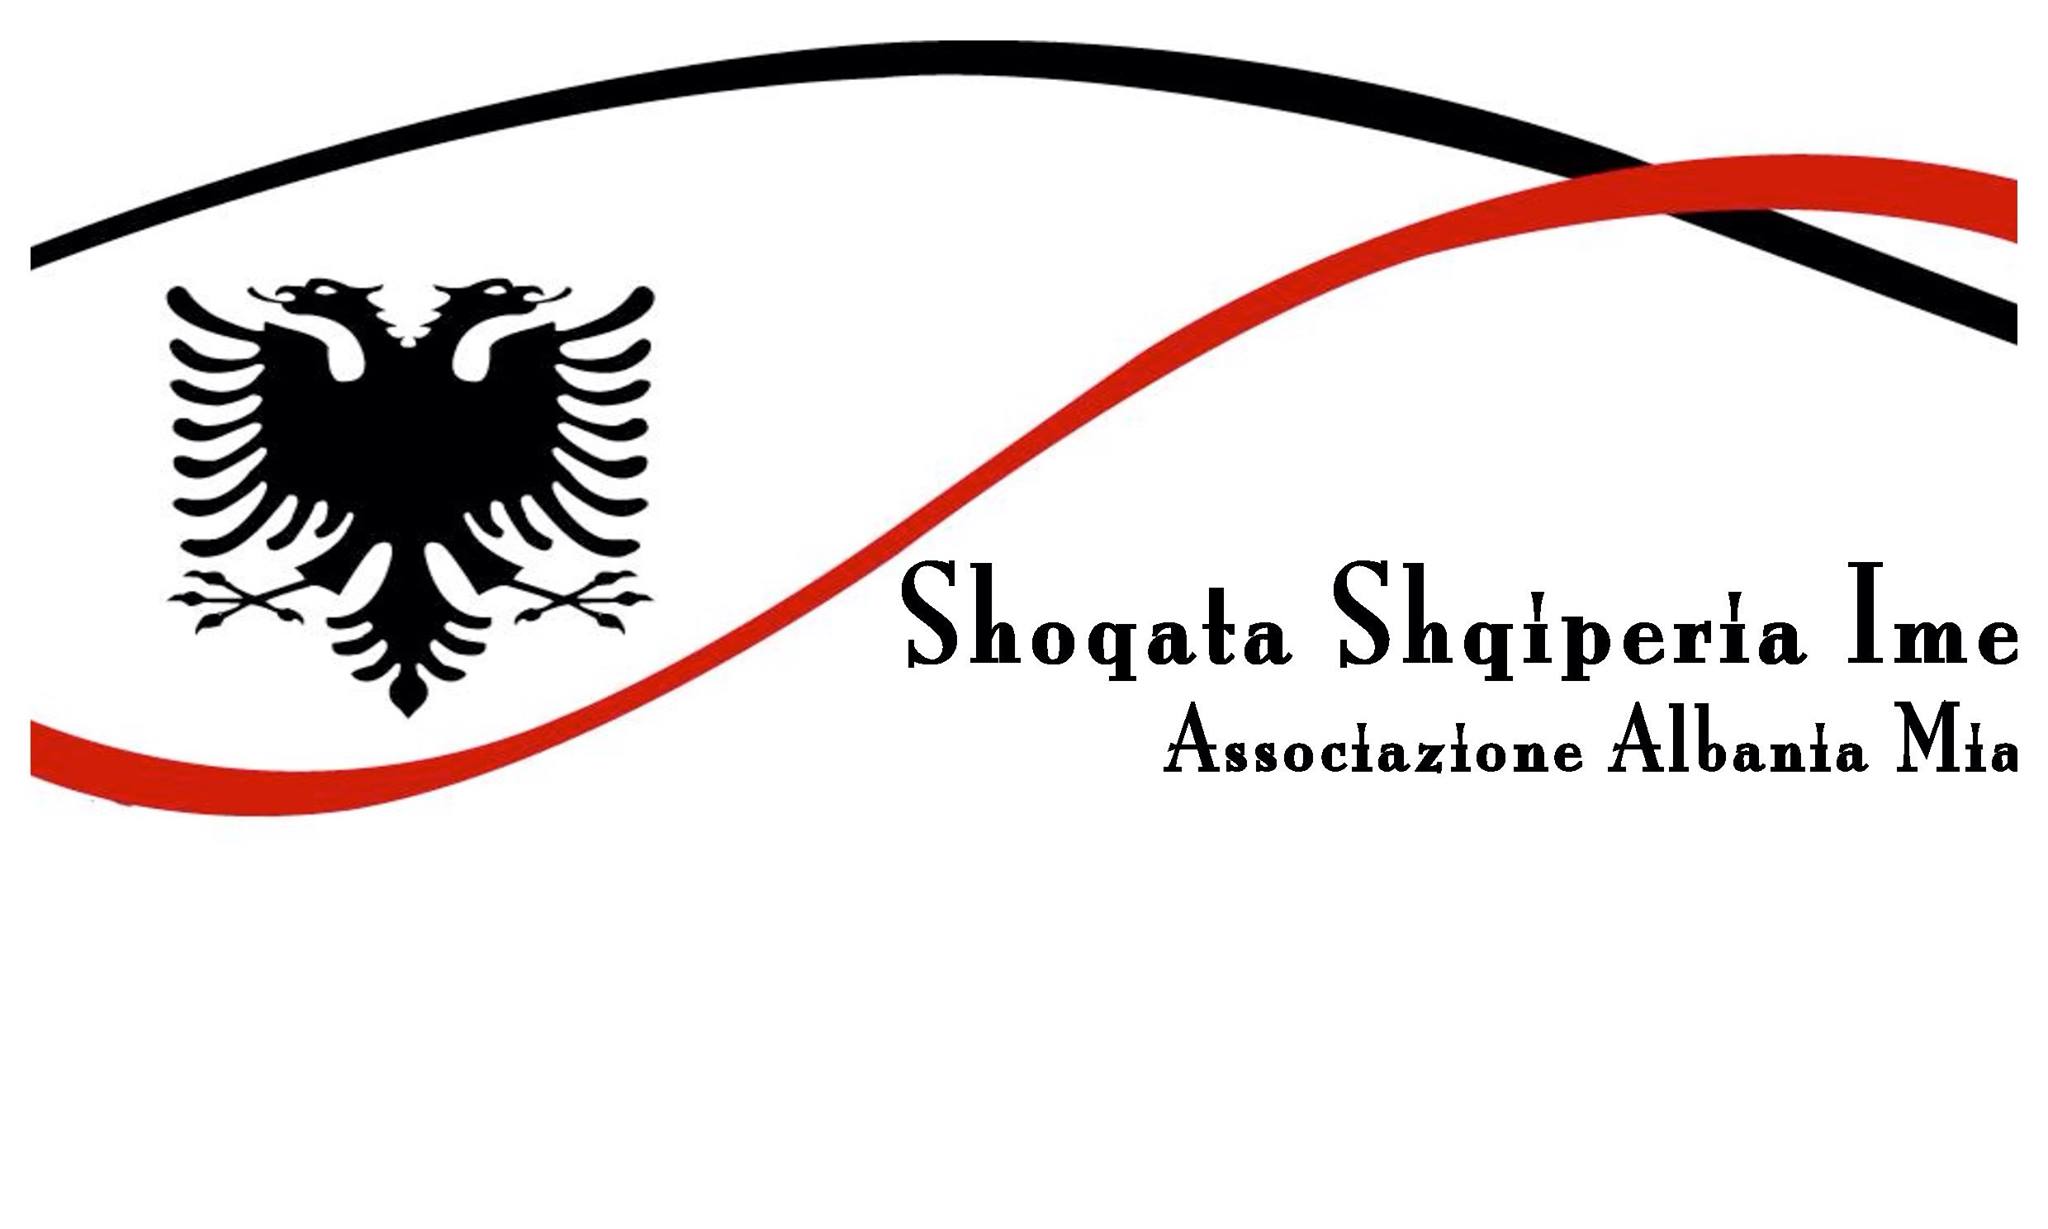 Shoqata Shqiperia Ime